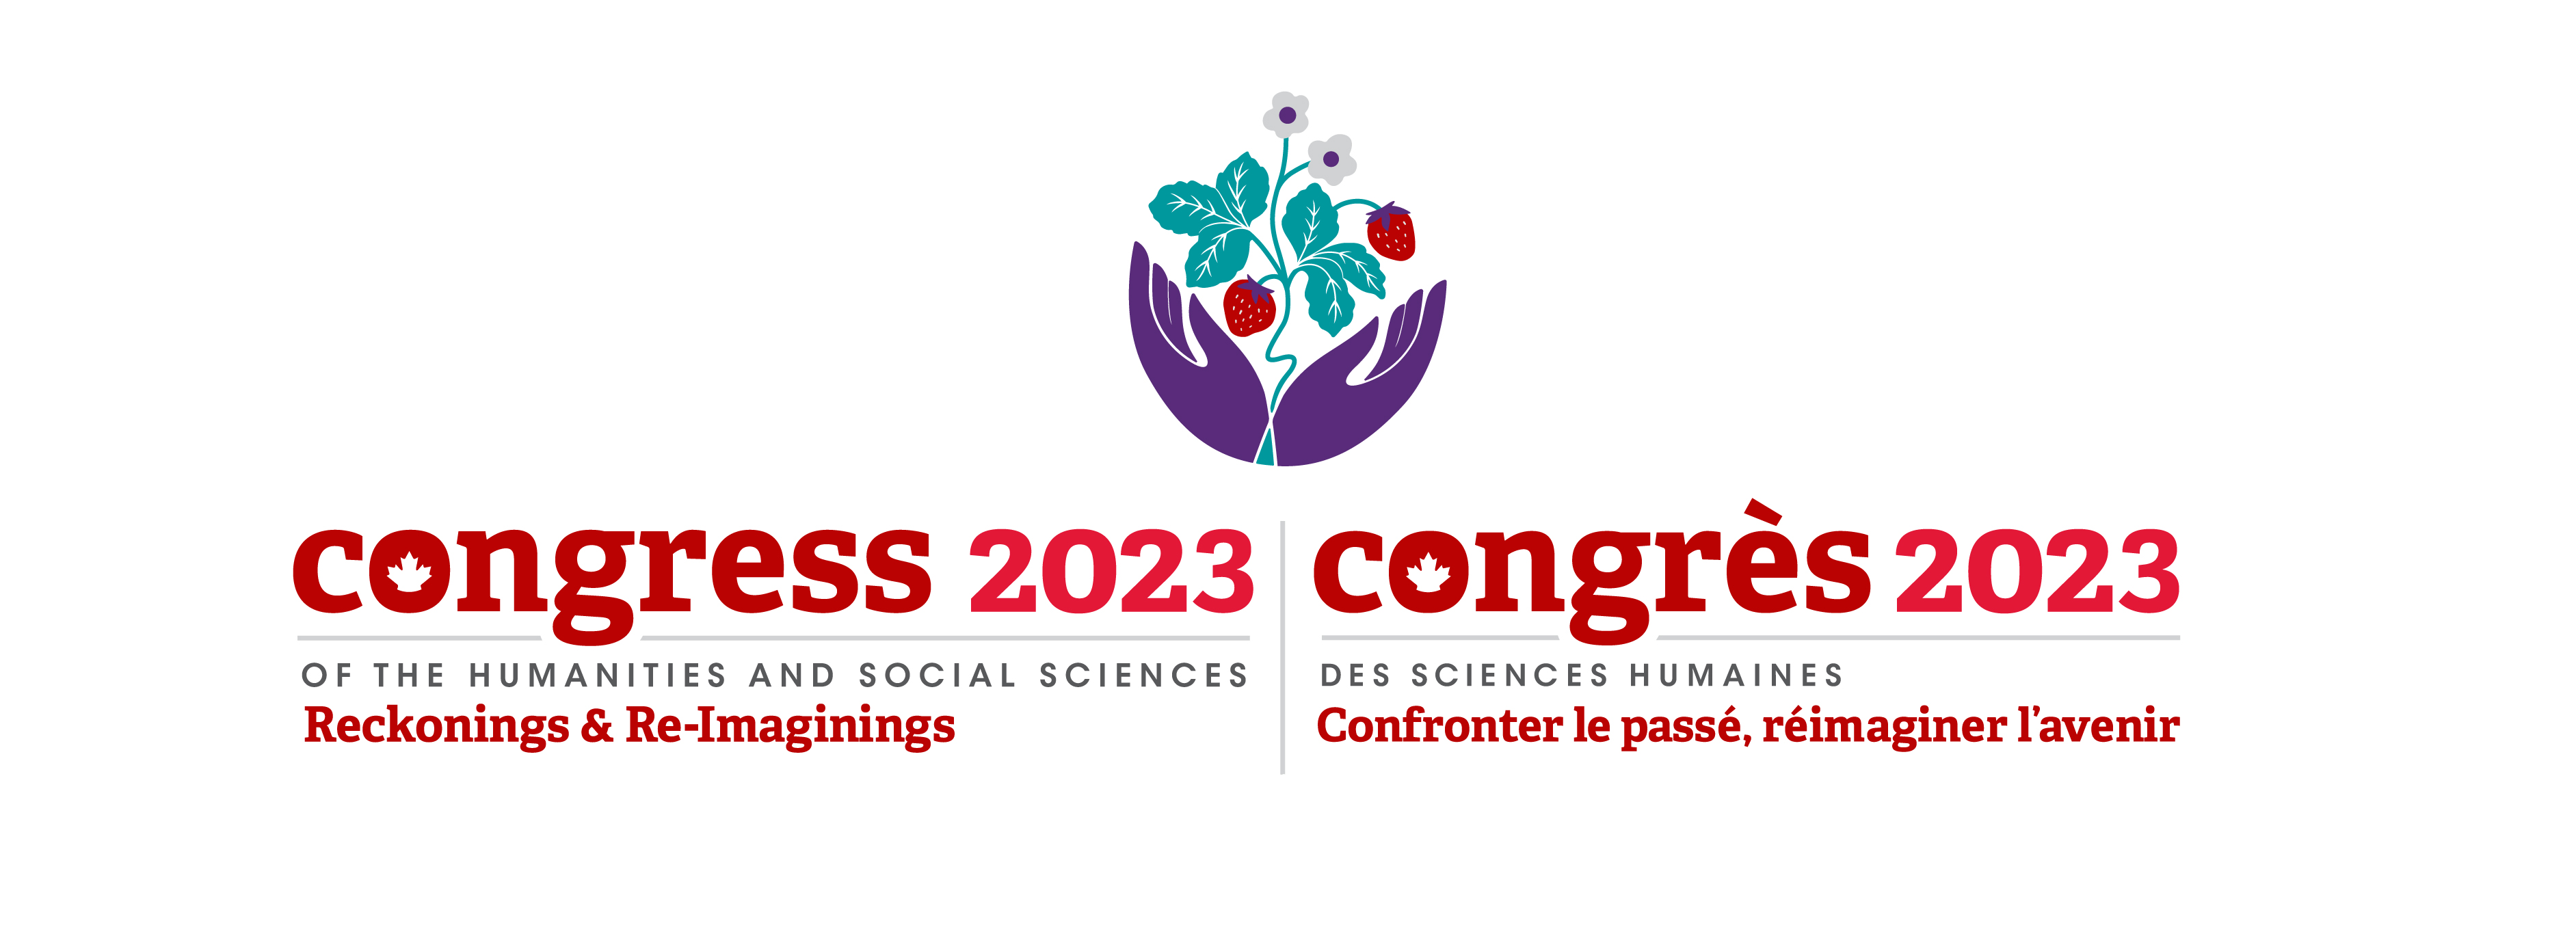 Congress 2023 logo / Logo de Congres 2023